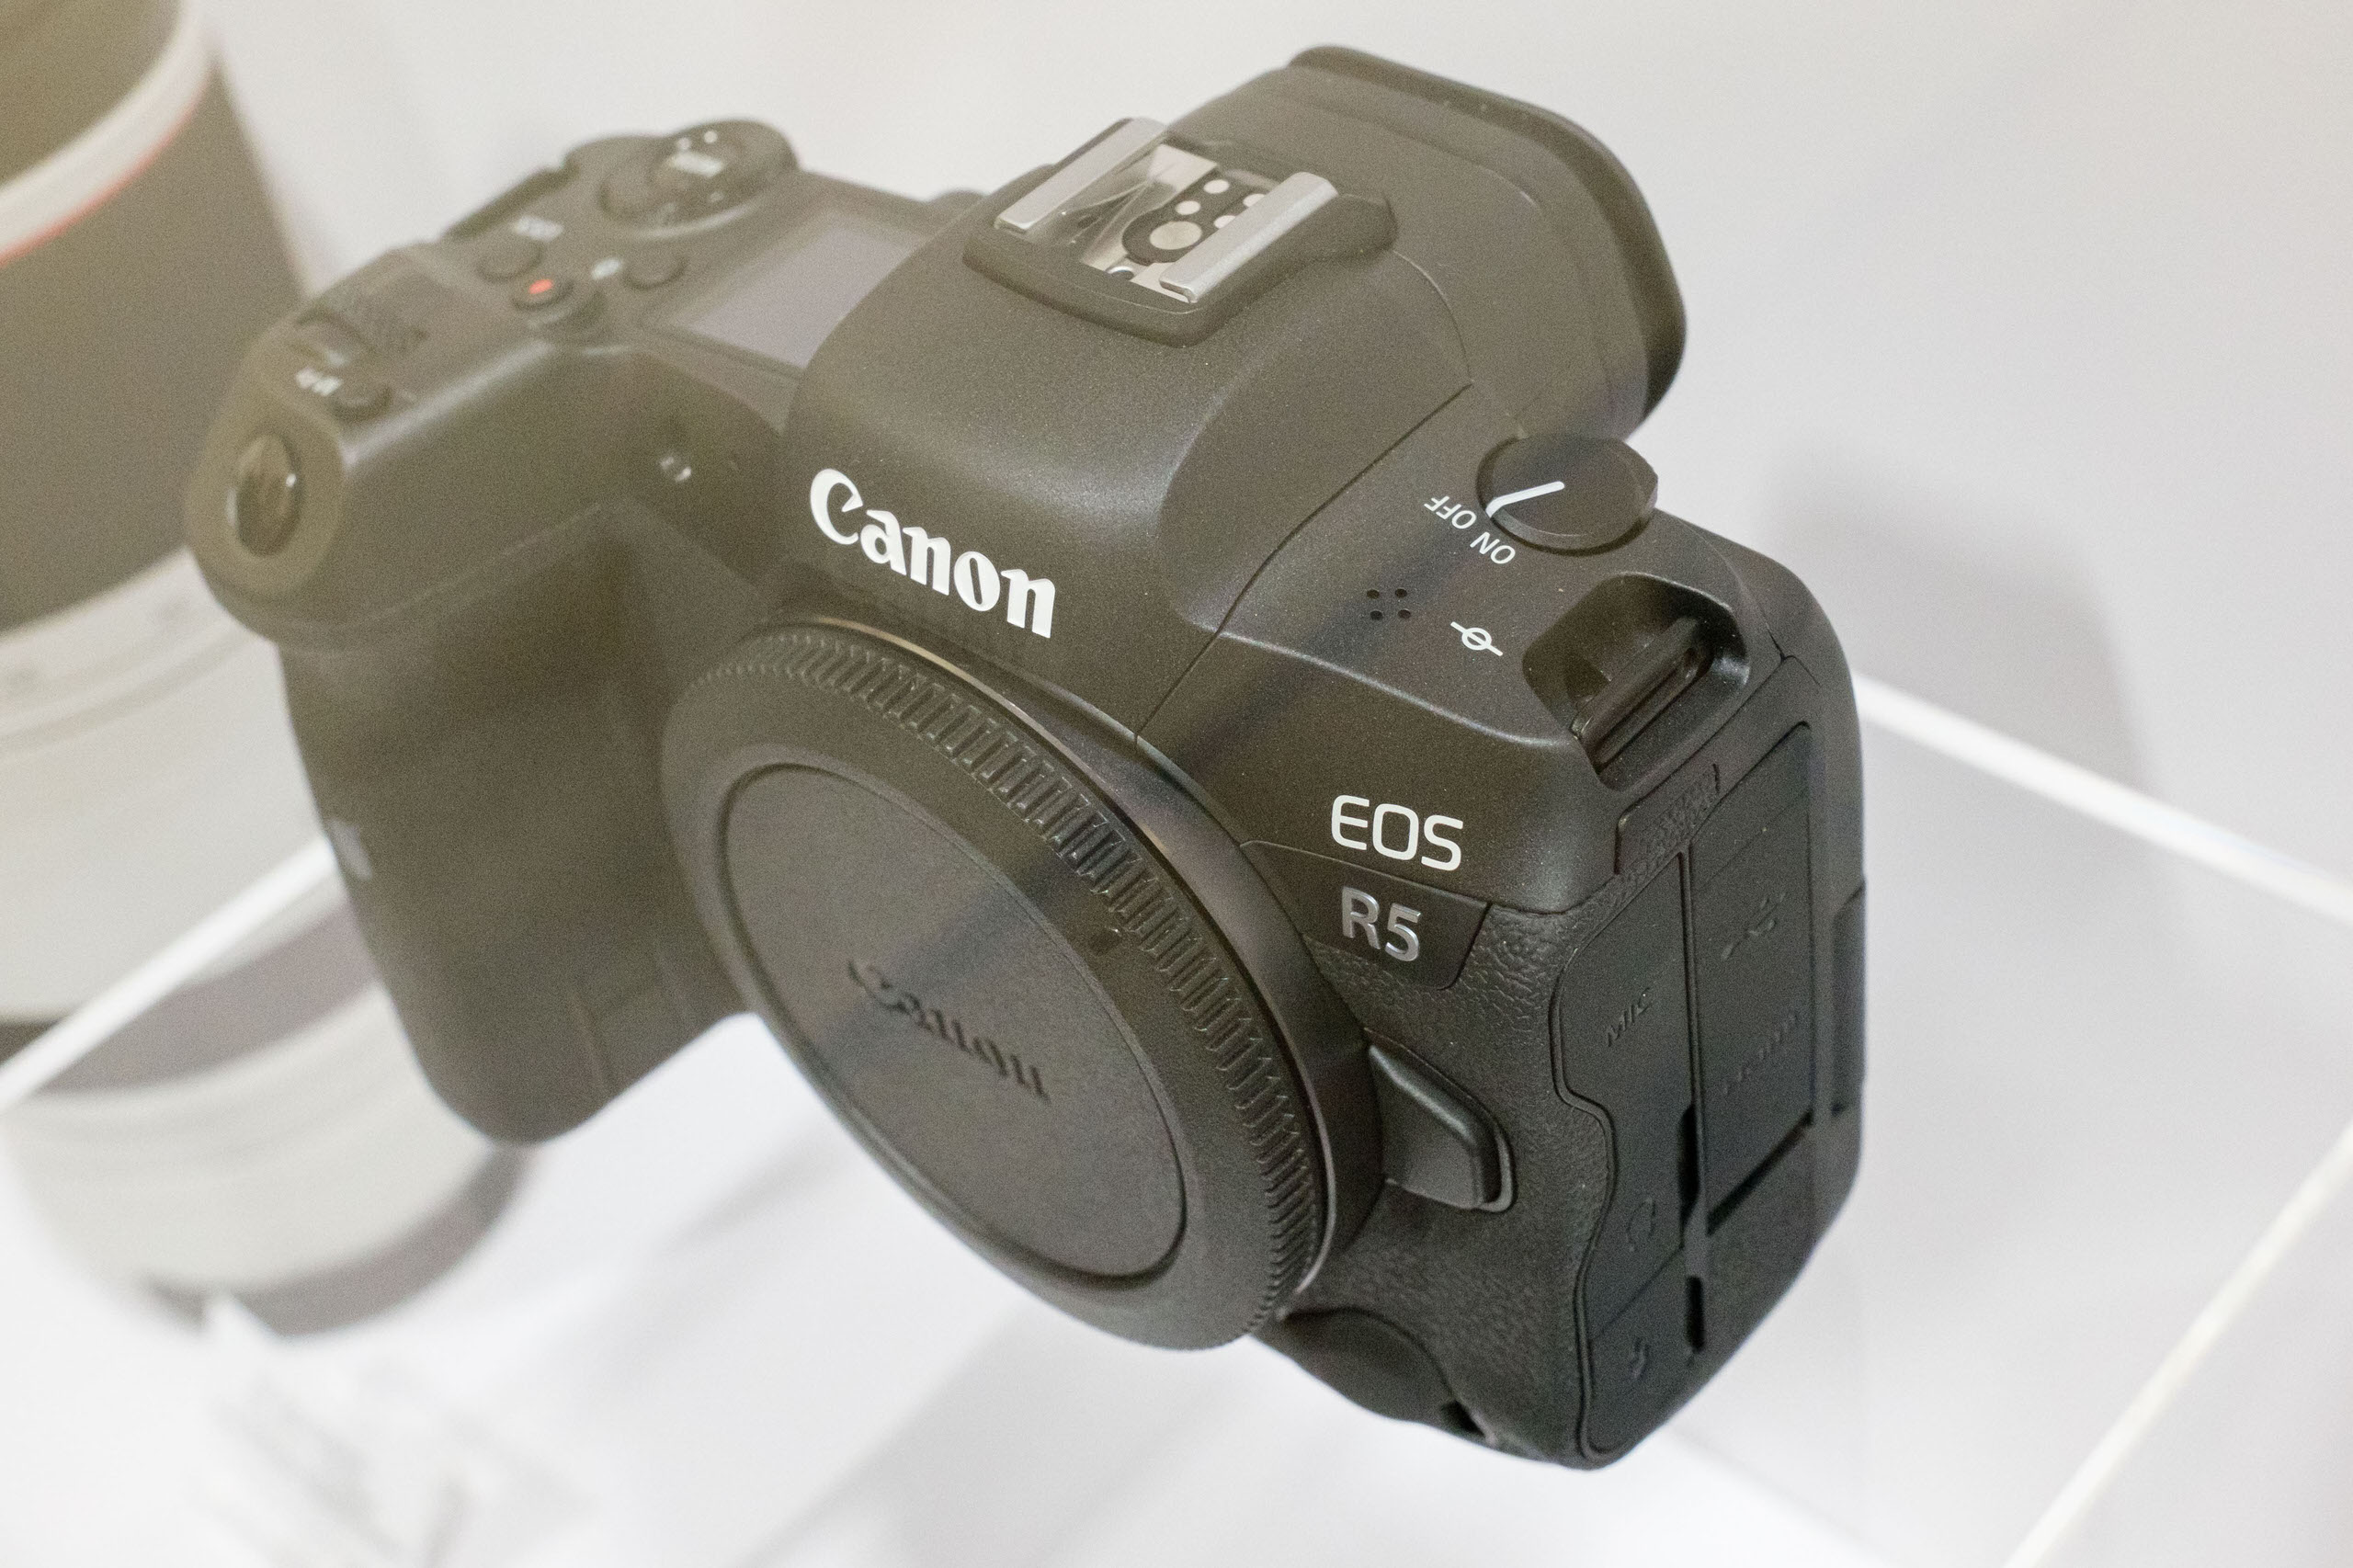 Canon xác nhận EOS R5 sẽ có thể quay video 8K/30p và có lấy nét AF động vật cao cấp